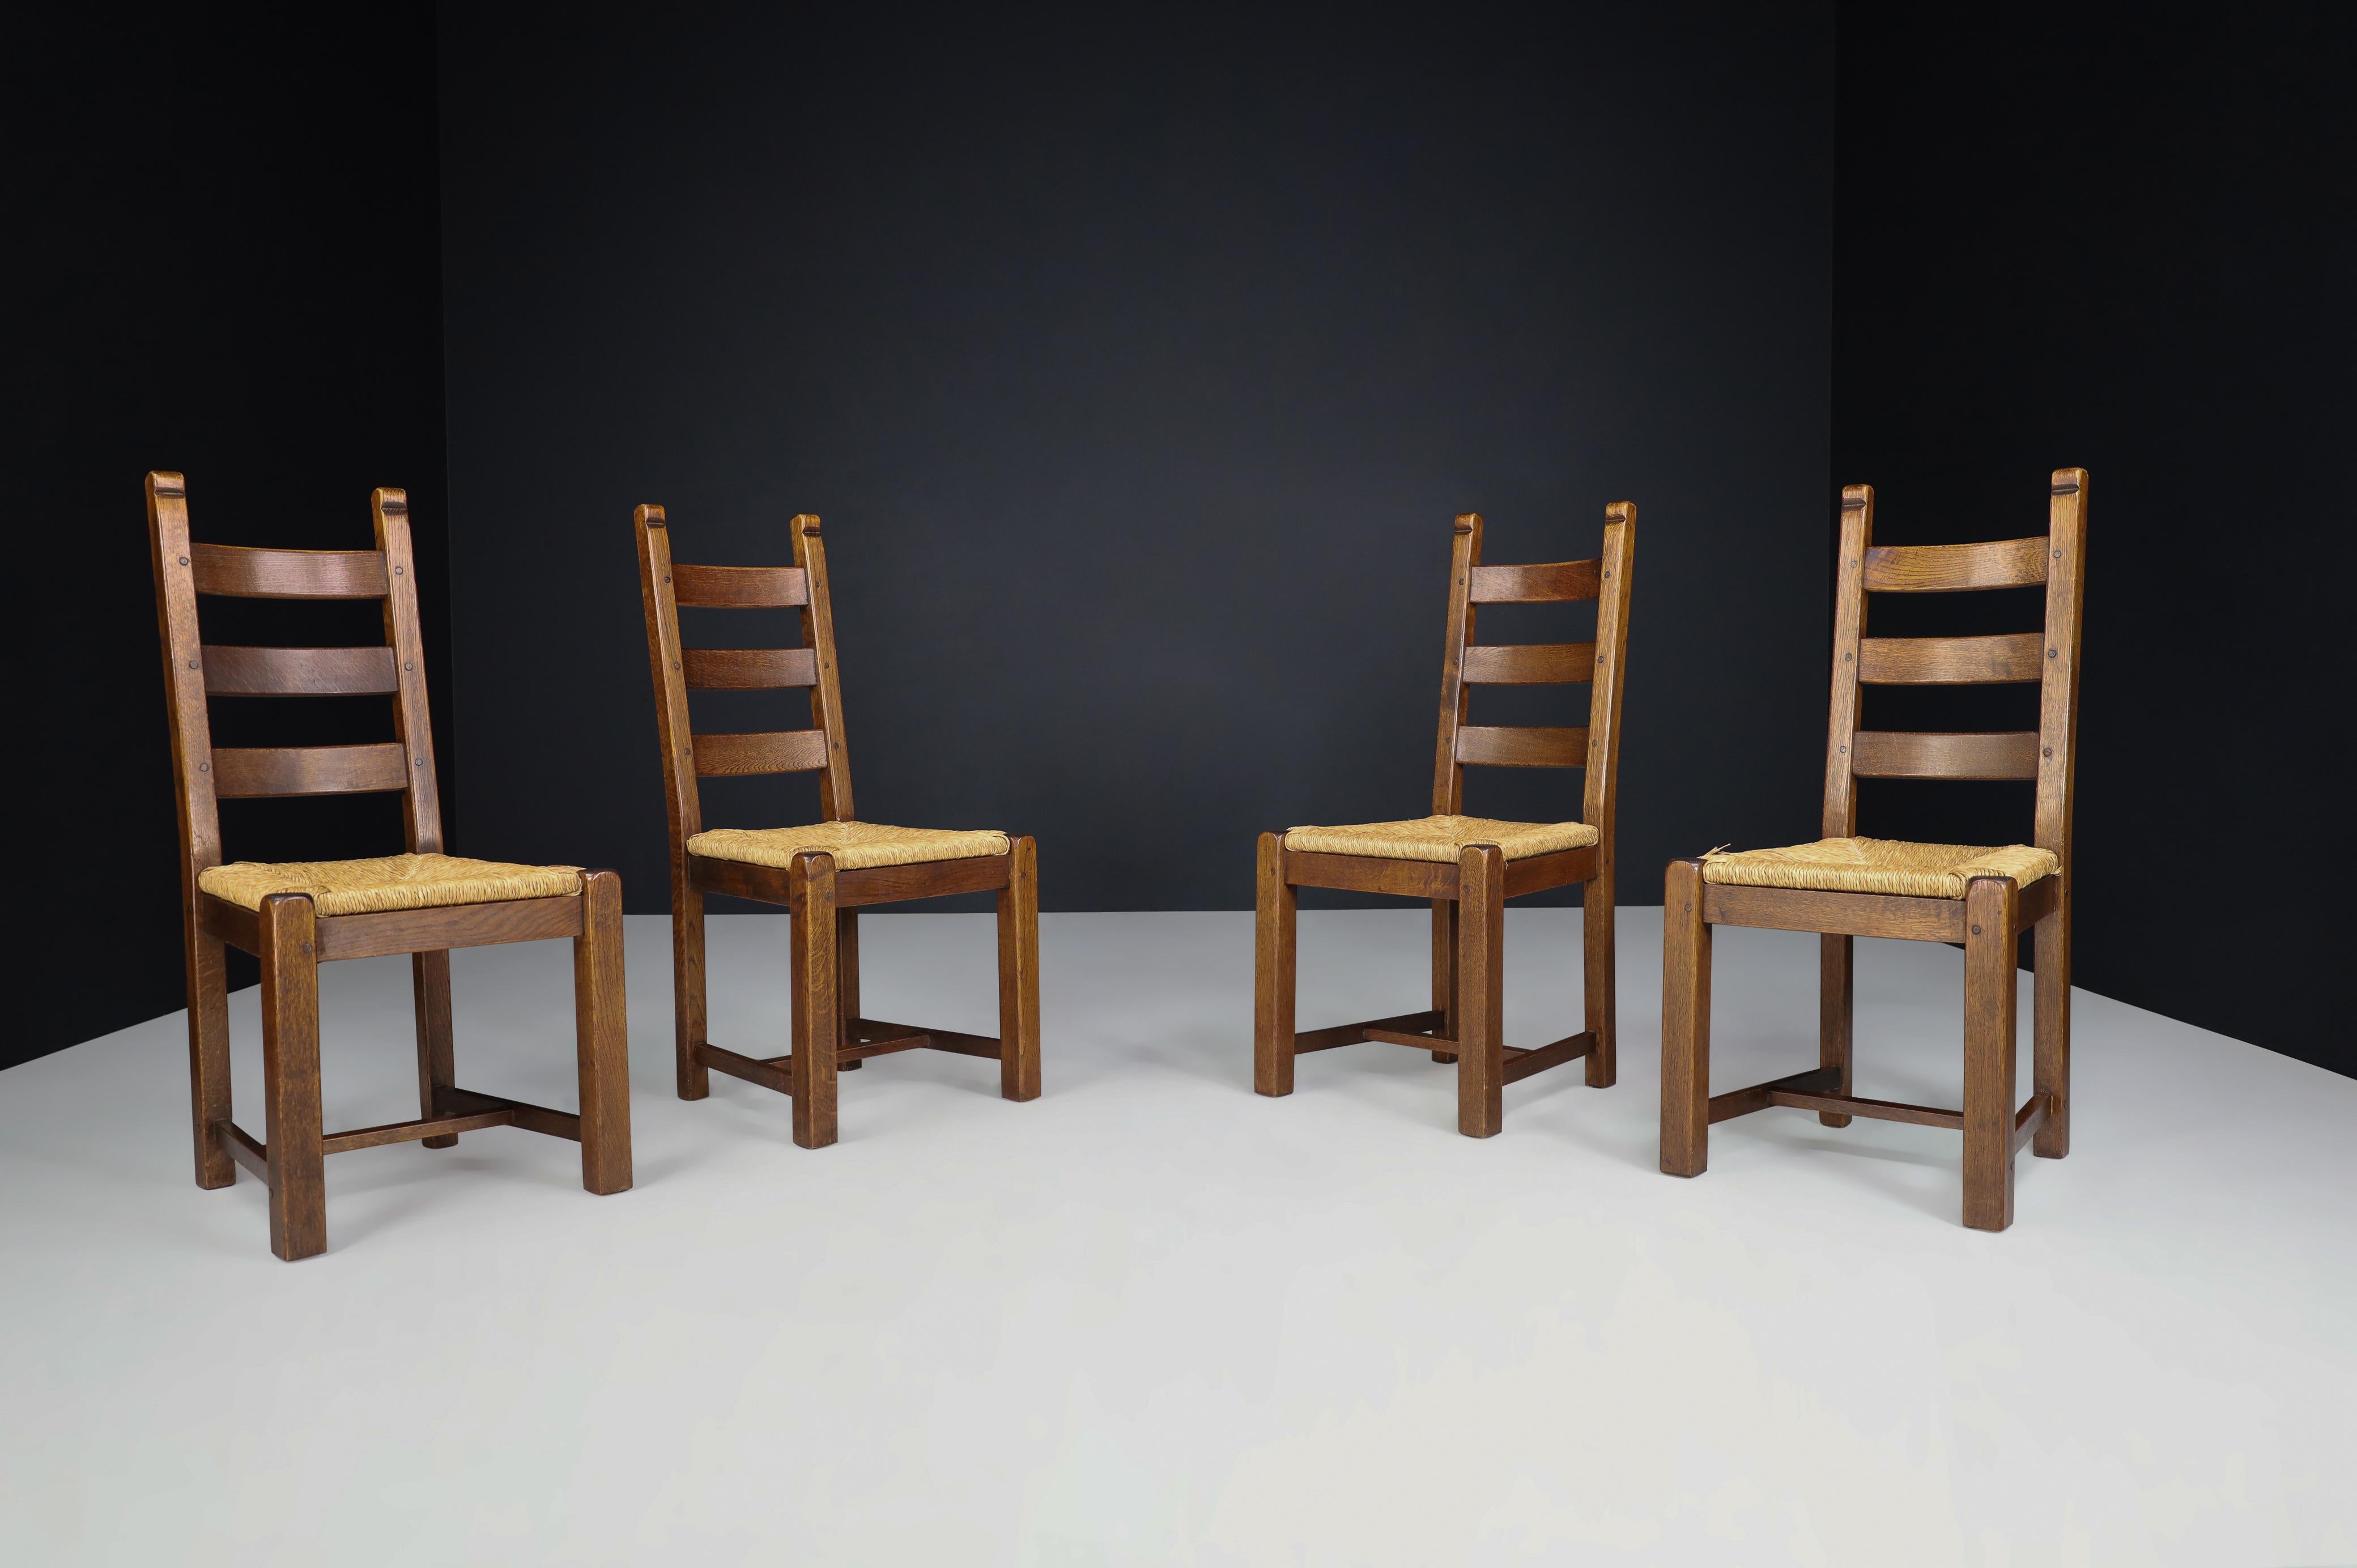 Chaises de salle à manger rustiques en chêne et jonc, France, années 1960

Ces chaises de salle à manger solides, fabriquées en chêne rustique et en jonc en France dans les années 1960, sont absolument indispensables ! L'ensemble comprend quatre